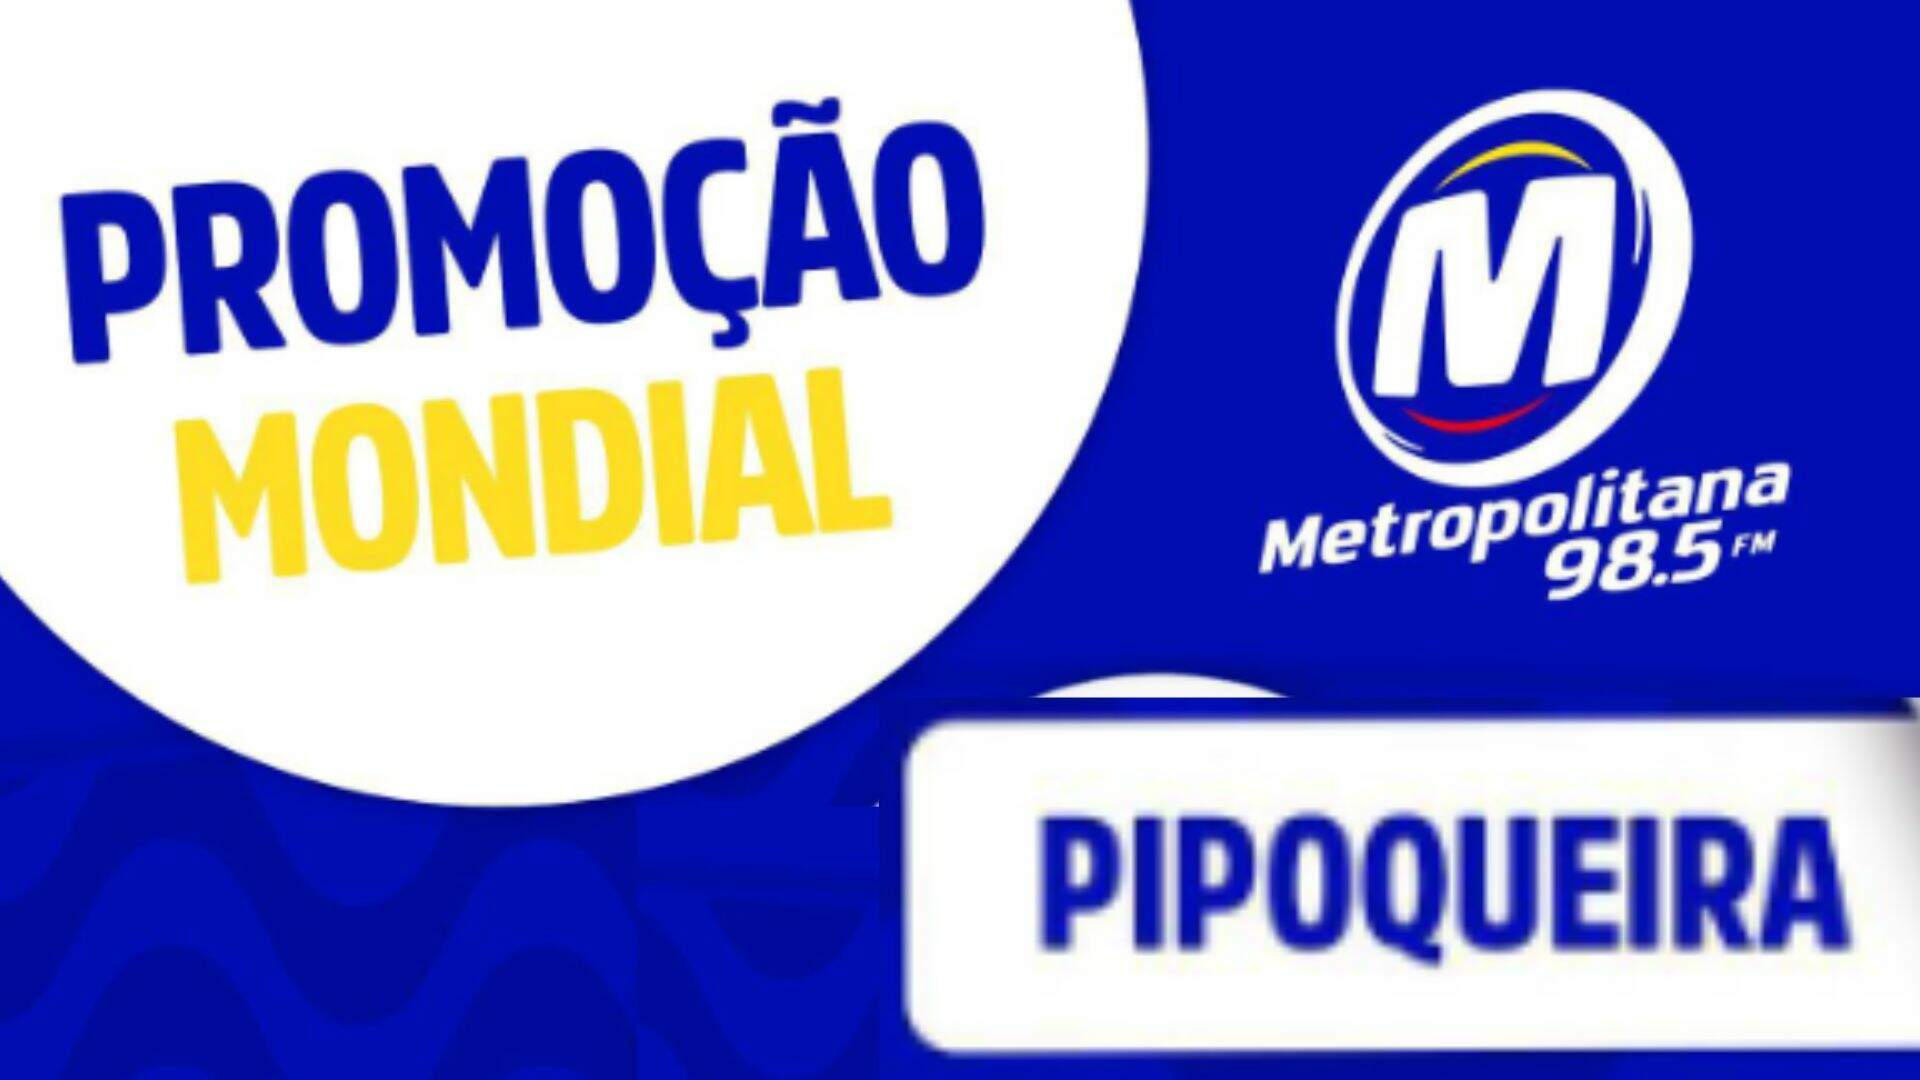 [ENCERRADA] Promoção: PIPOQUEIRA MONDIAL NA METROPOLITANA FM